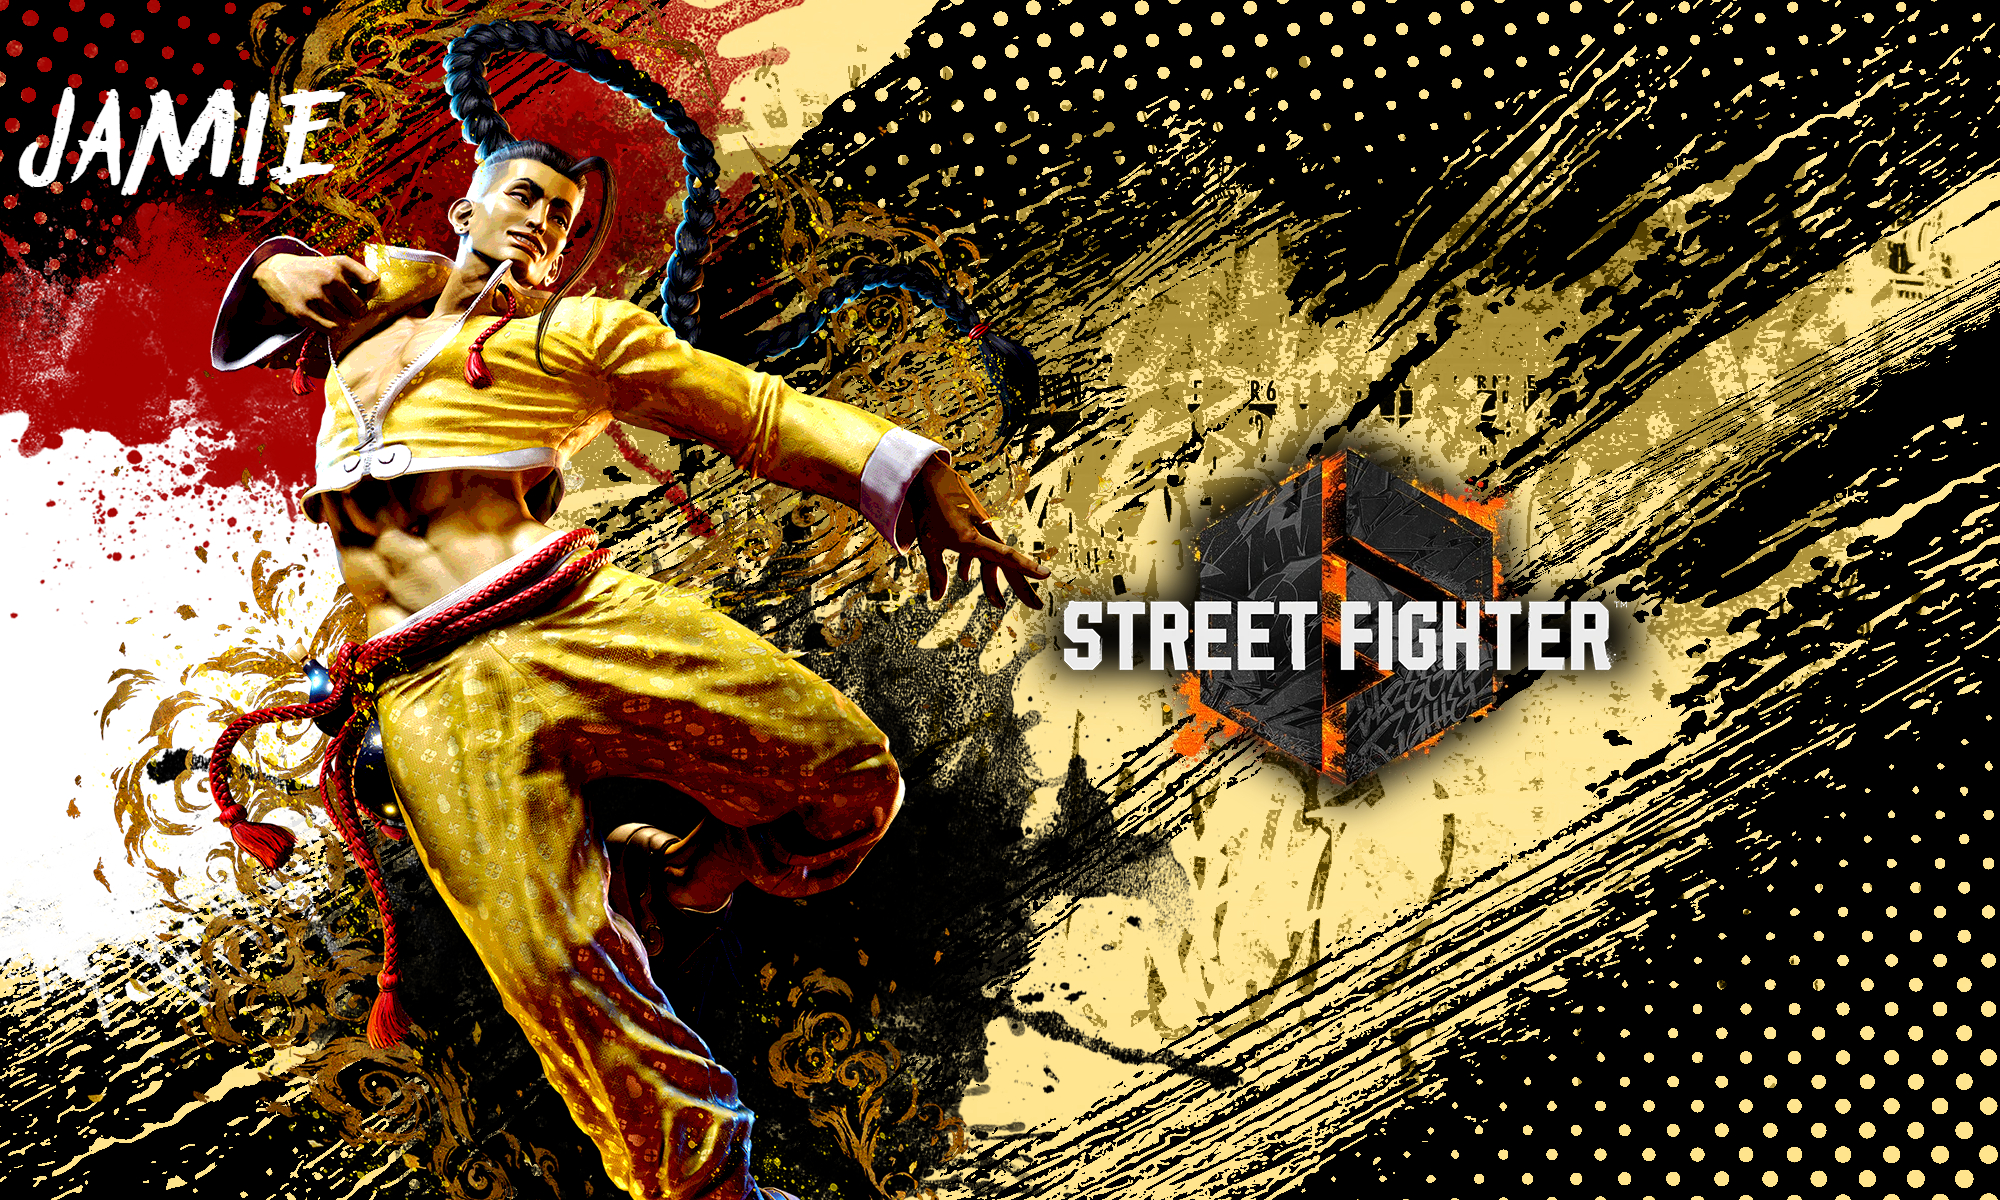 Street Fighter 6 - Cammy wallpaper by DaKidGaming on DeviantArt